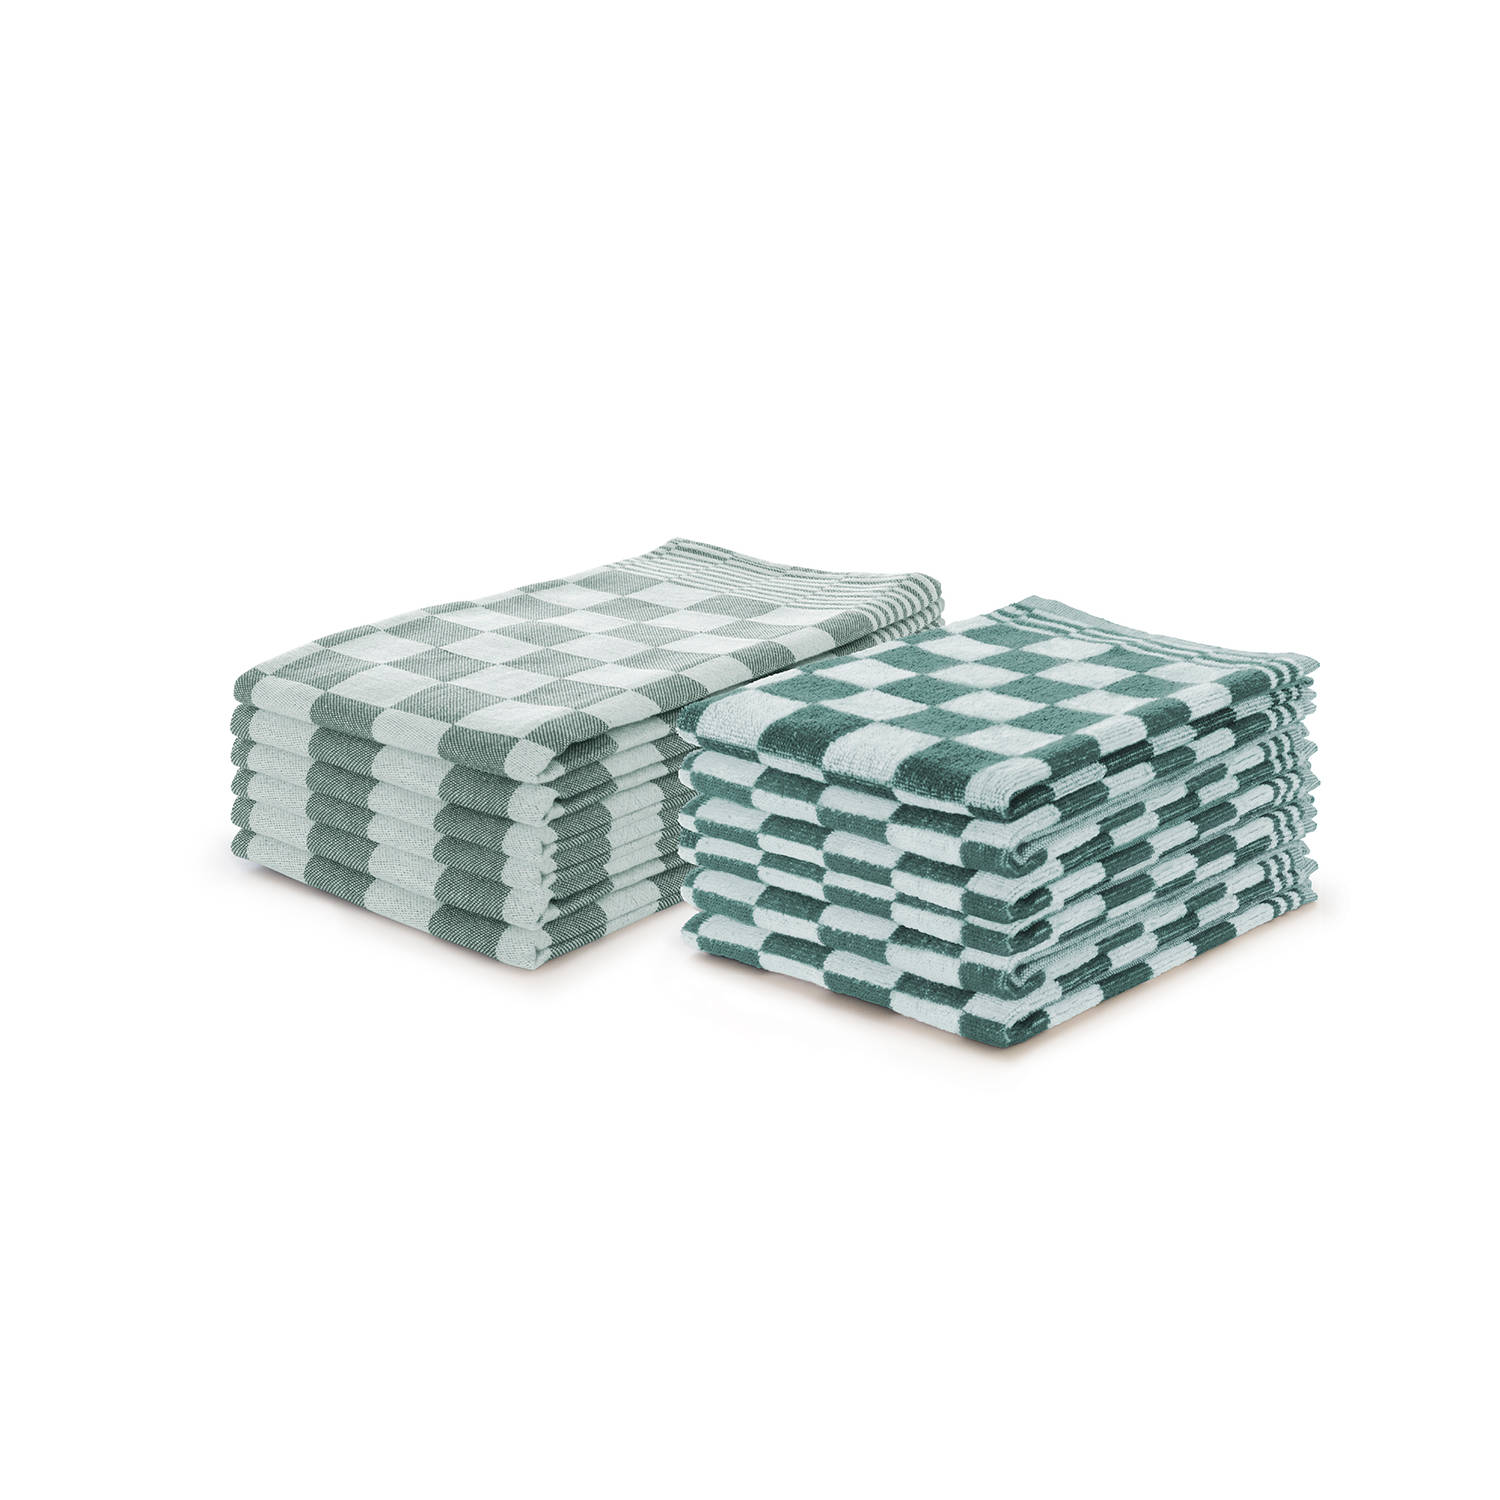 Elegance Theedoeken & Keukendoeken Set Blok - donker groen - set van 12